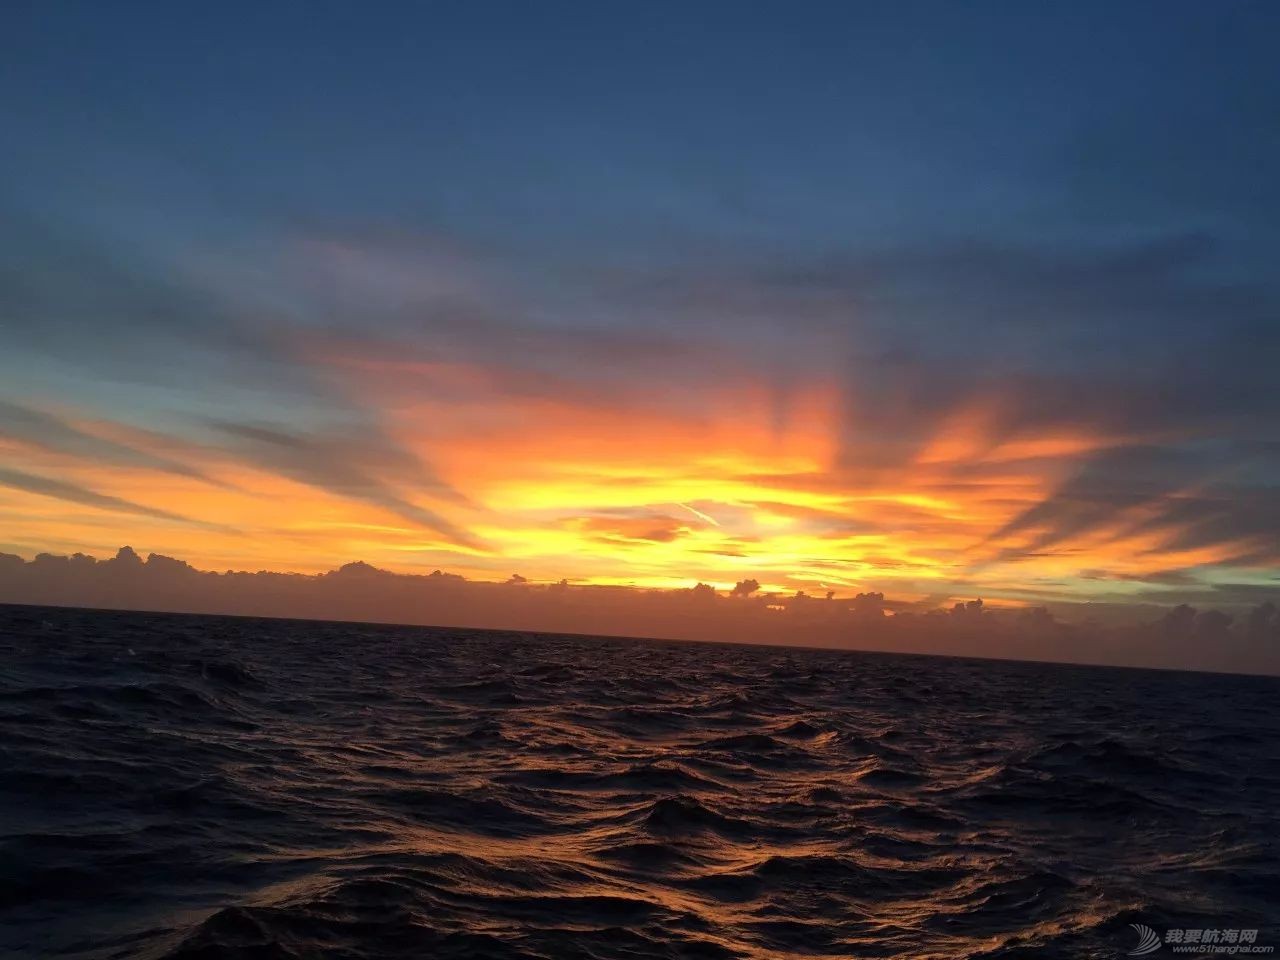 太阳初升时,忽然有十万支金喇叭齐鸣!我在帆船上迎接黎明……w11.jpg